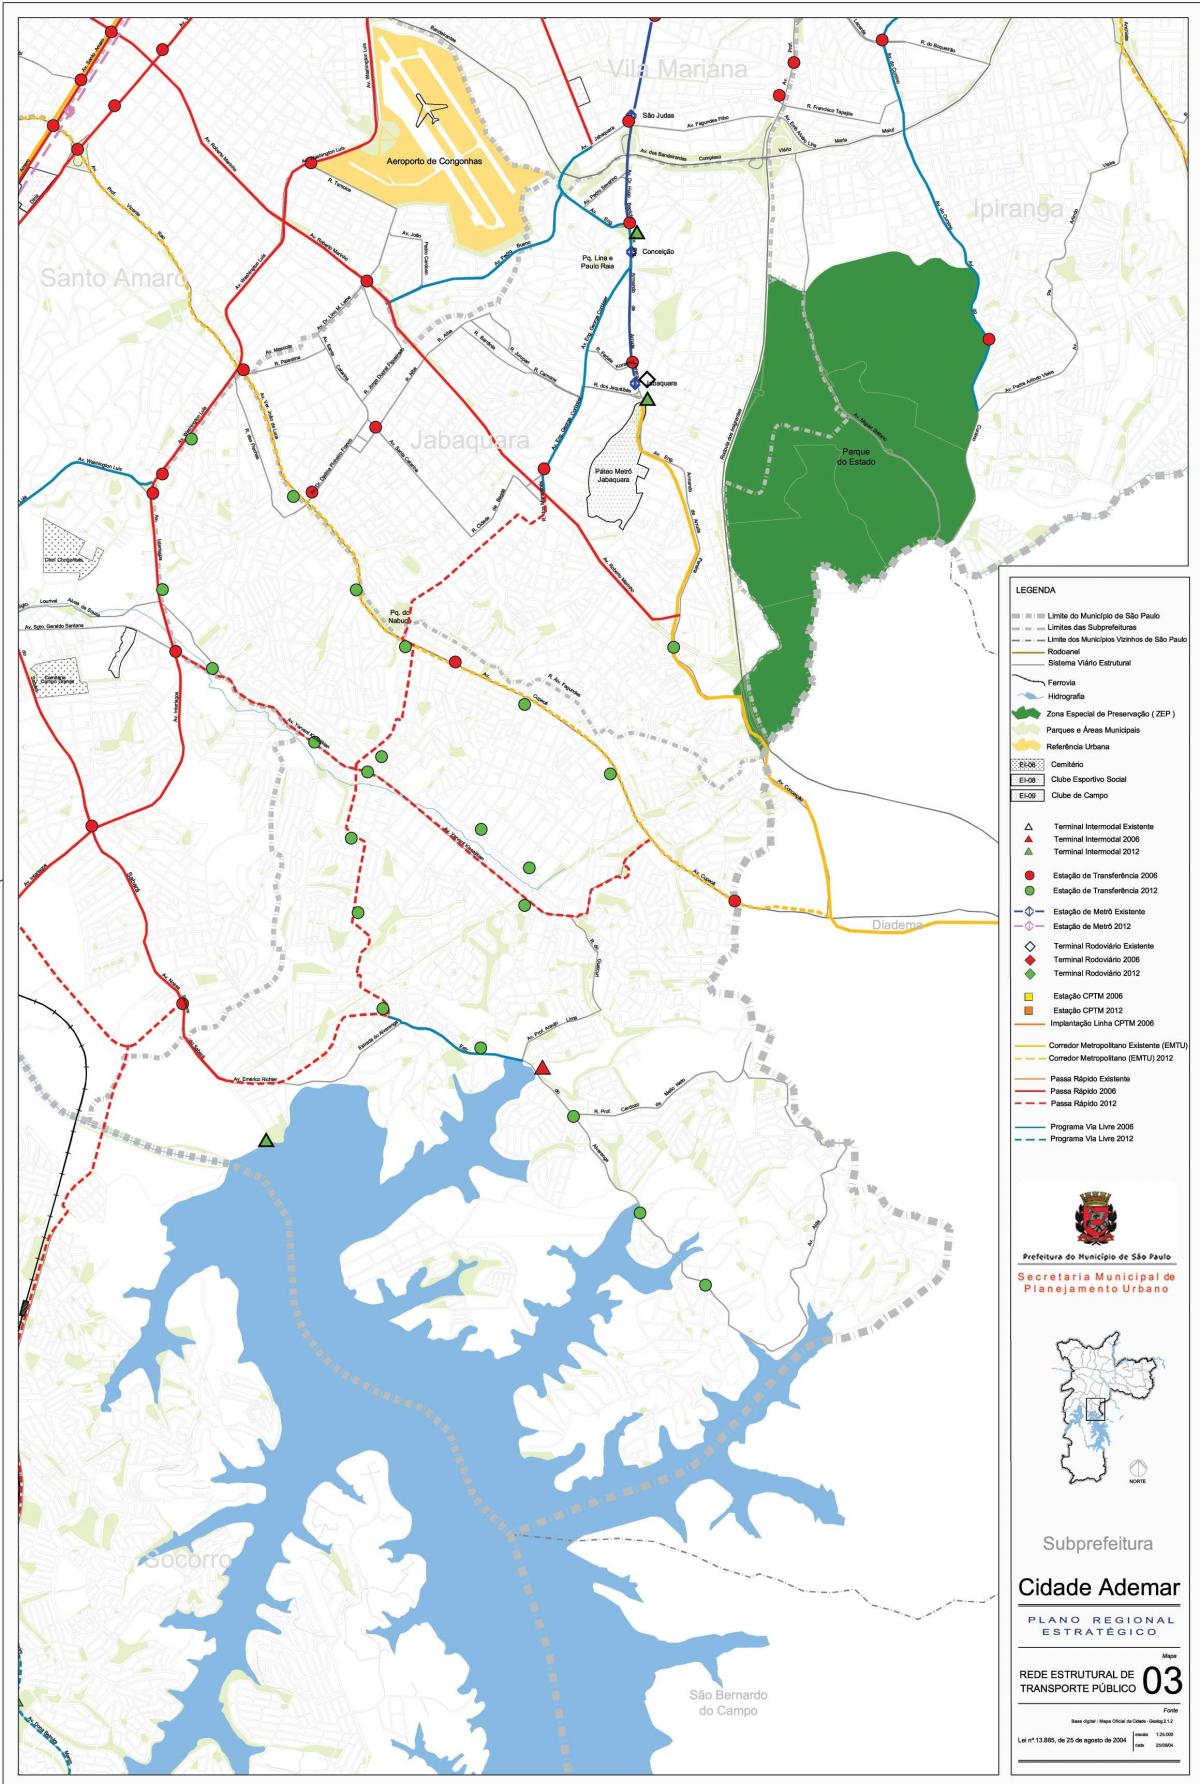 Mapa ng Cidade Ademar São Paulo - Pampublikong transports